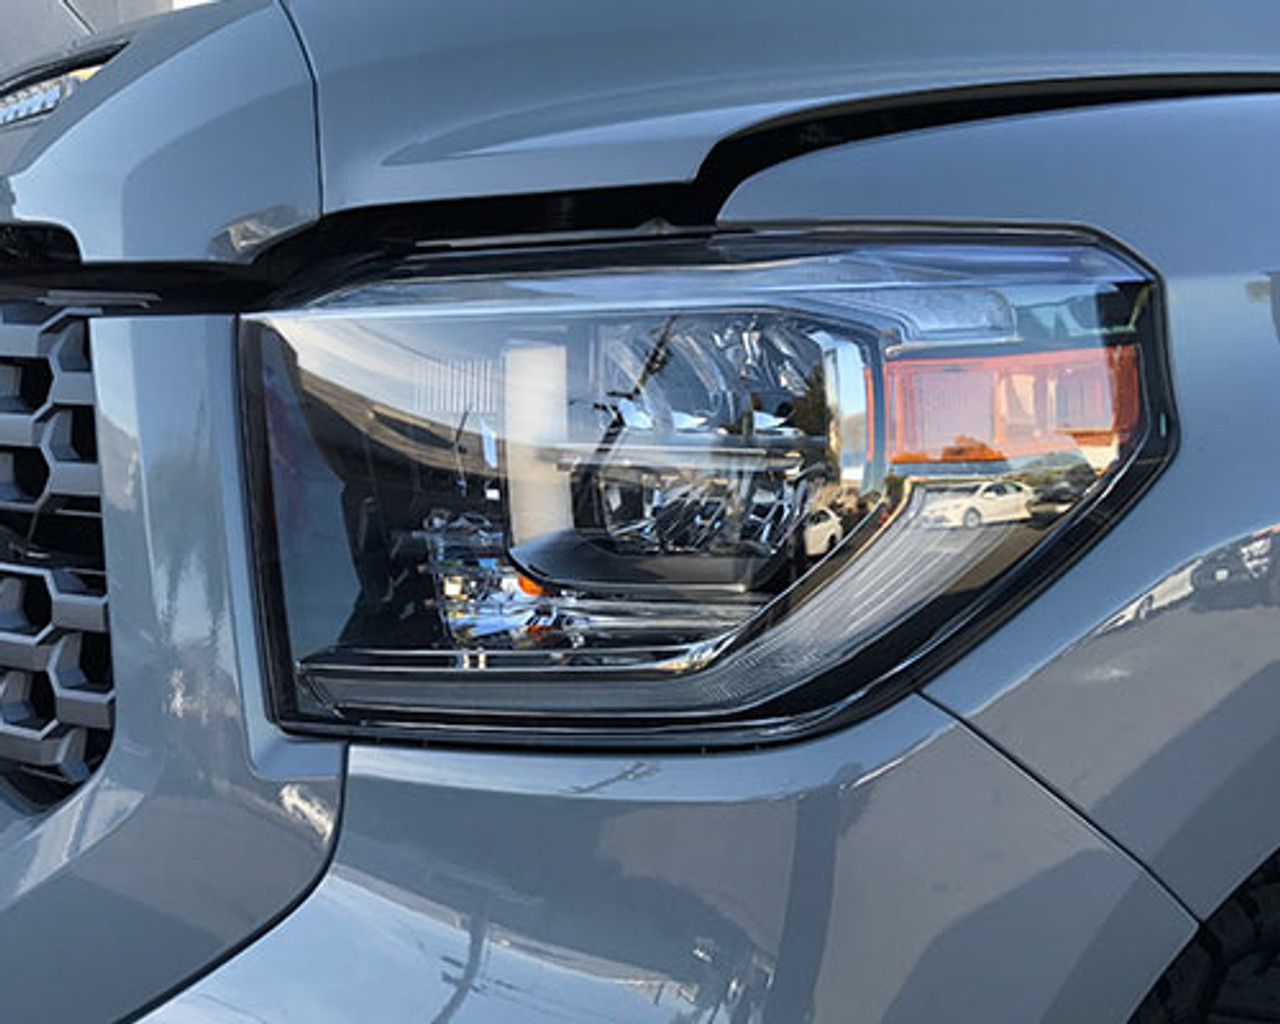 2018 Toyota Tundra LED headlights